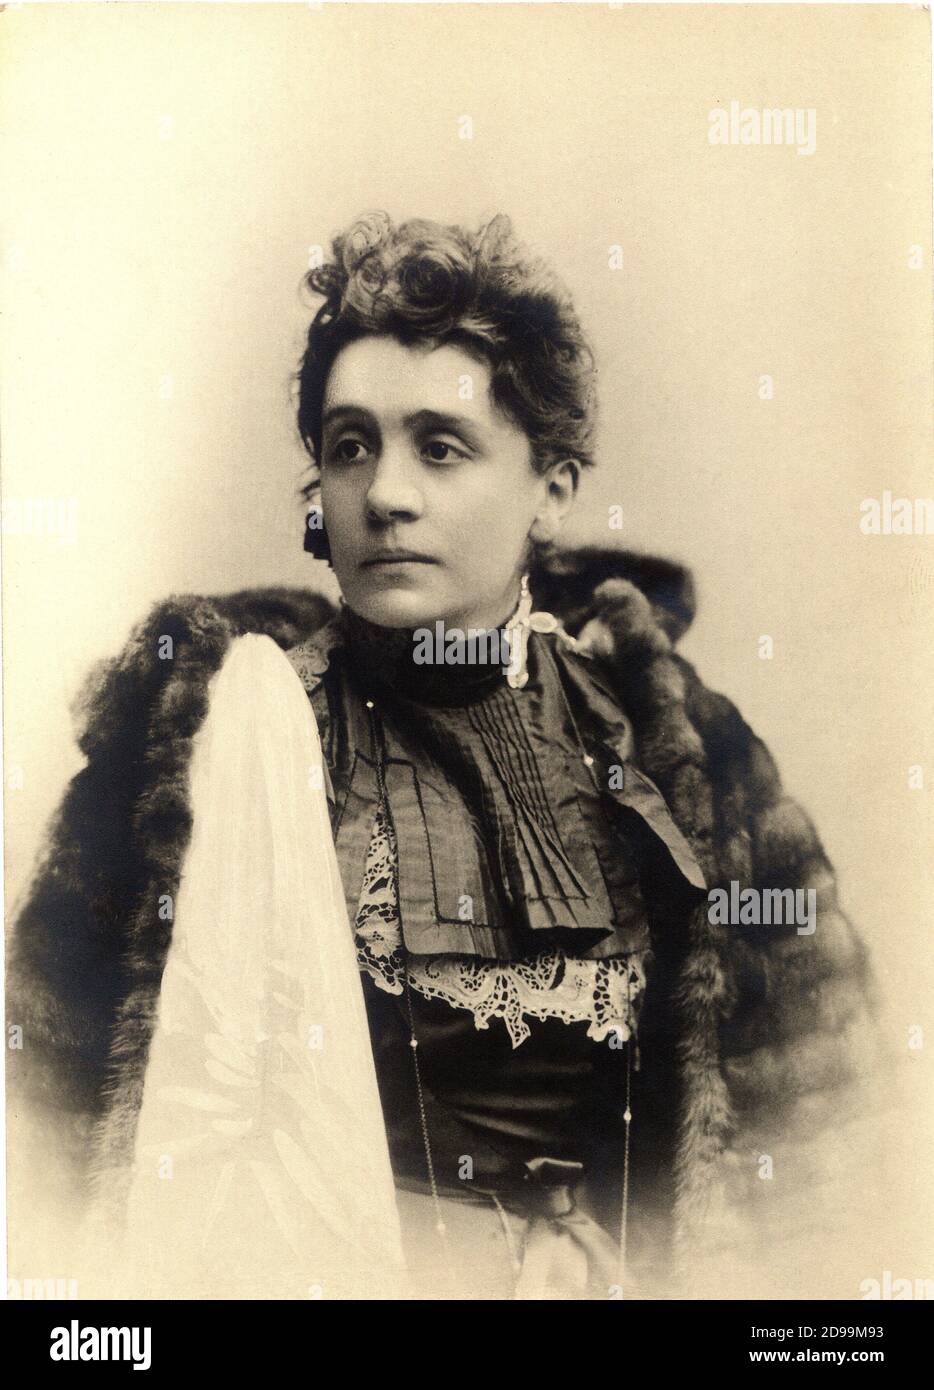 ELEONORA DUSE ( Vigevano 1858 - Pittsburgh , USA 1924 ) die gefeierte italienische dramatische Schauspielerin , Berühmter Liebhaber des italienischen Dichters Gabriele D' ANNUNZIO - TEATRO - THEATER - Attrice - Portrait - ritratto - pelliccia - Fell - collana - Halskette - pizzo - Spitze - chignon ---- Archivio GBB Stockfoto